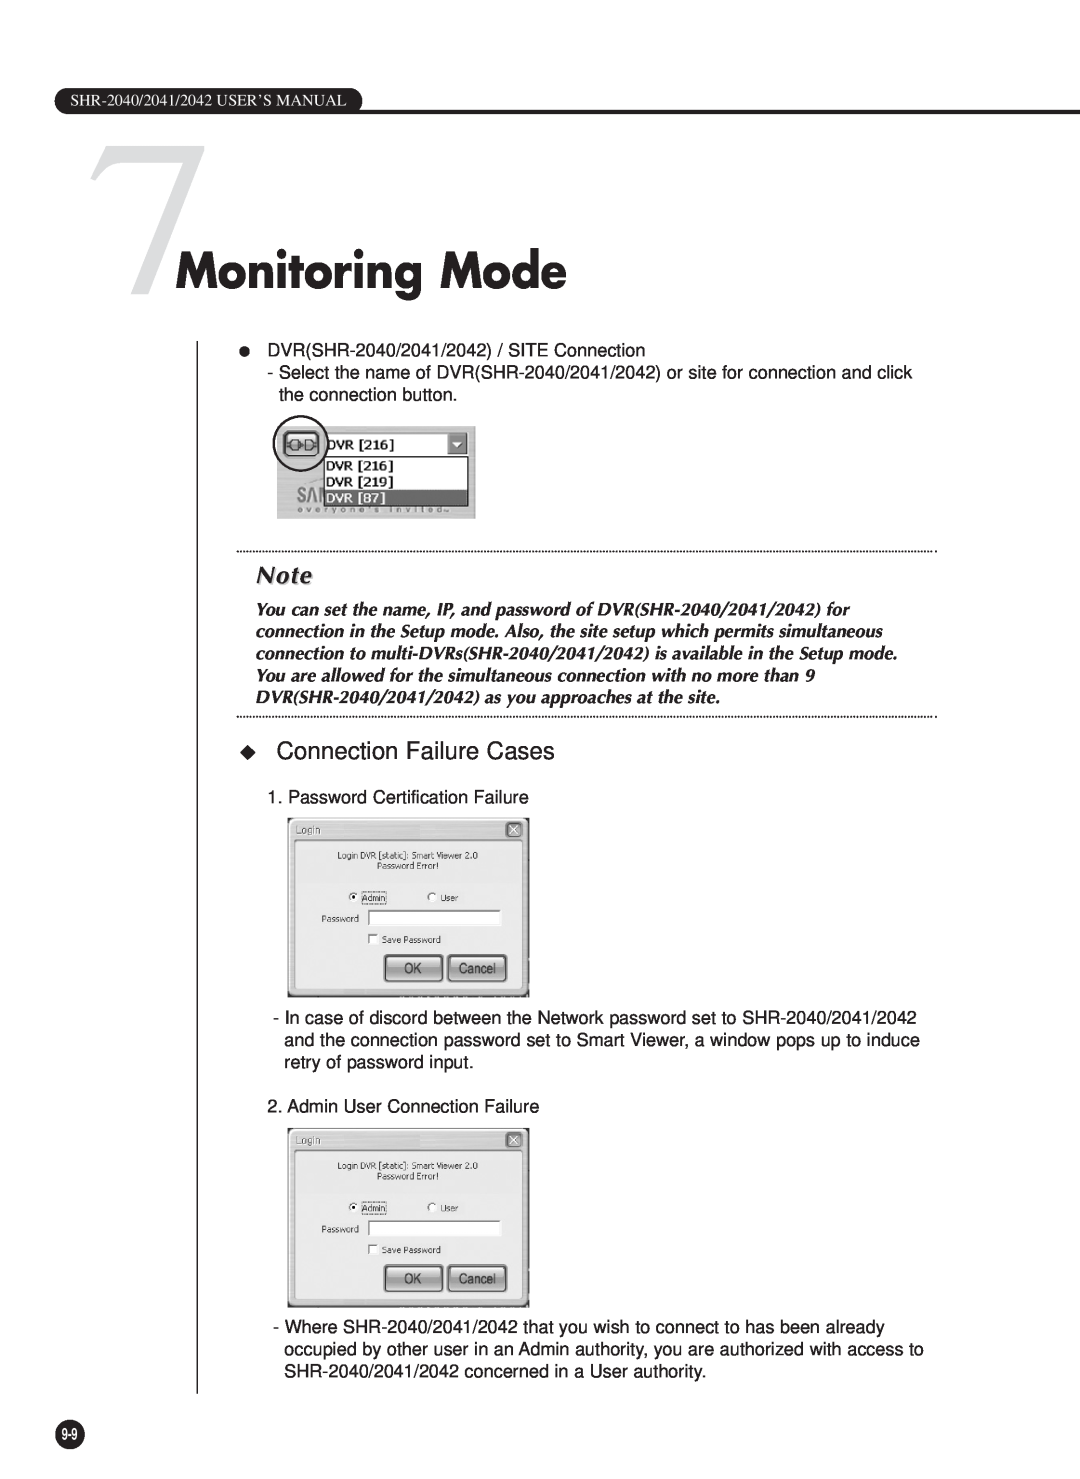 Samsung SHR-2040PX, SHR-2040P/GAR, SHR-2042P, SHR-2040P/XEC manual 7Monitoring Mode, Connection Failure Cases 